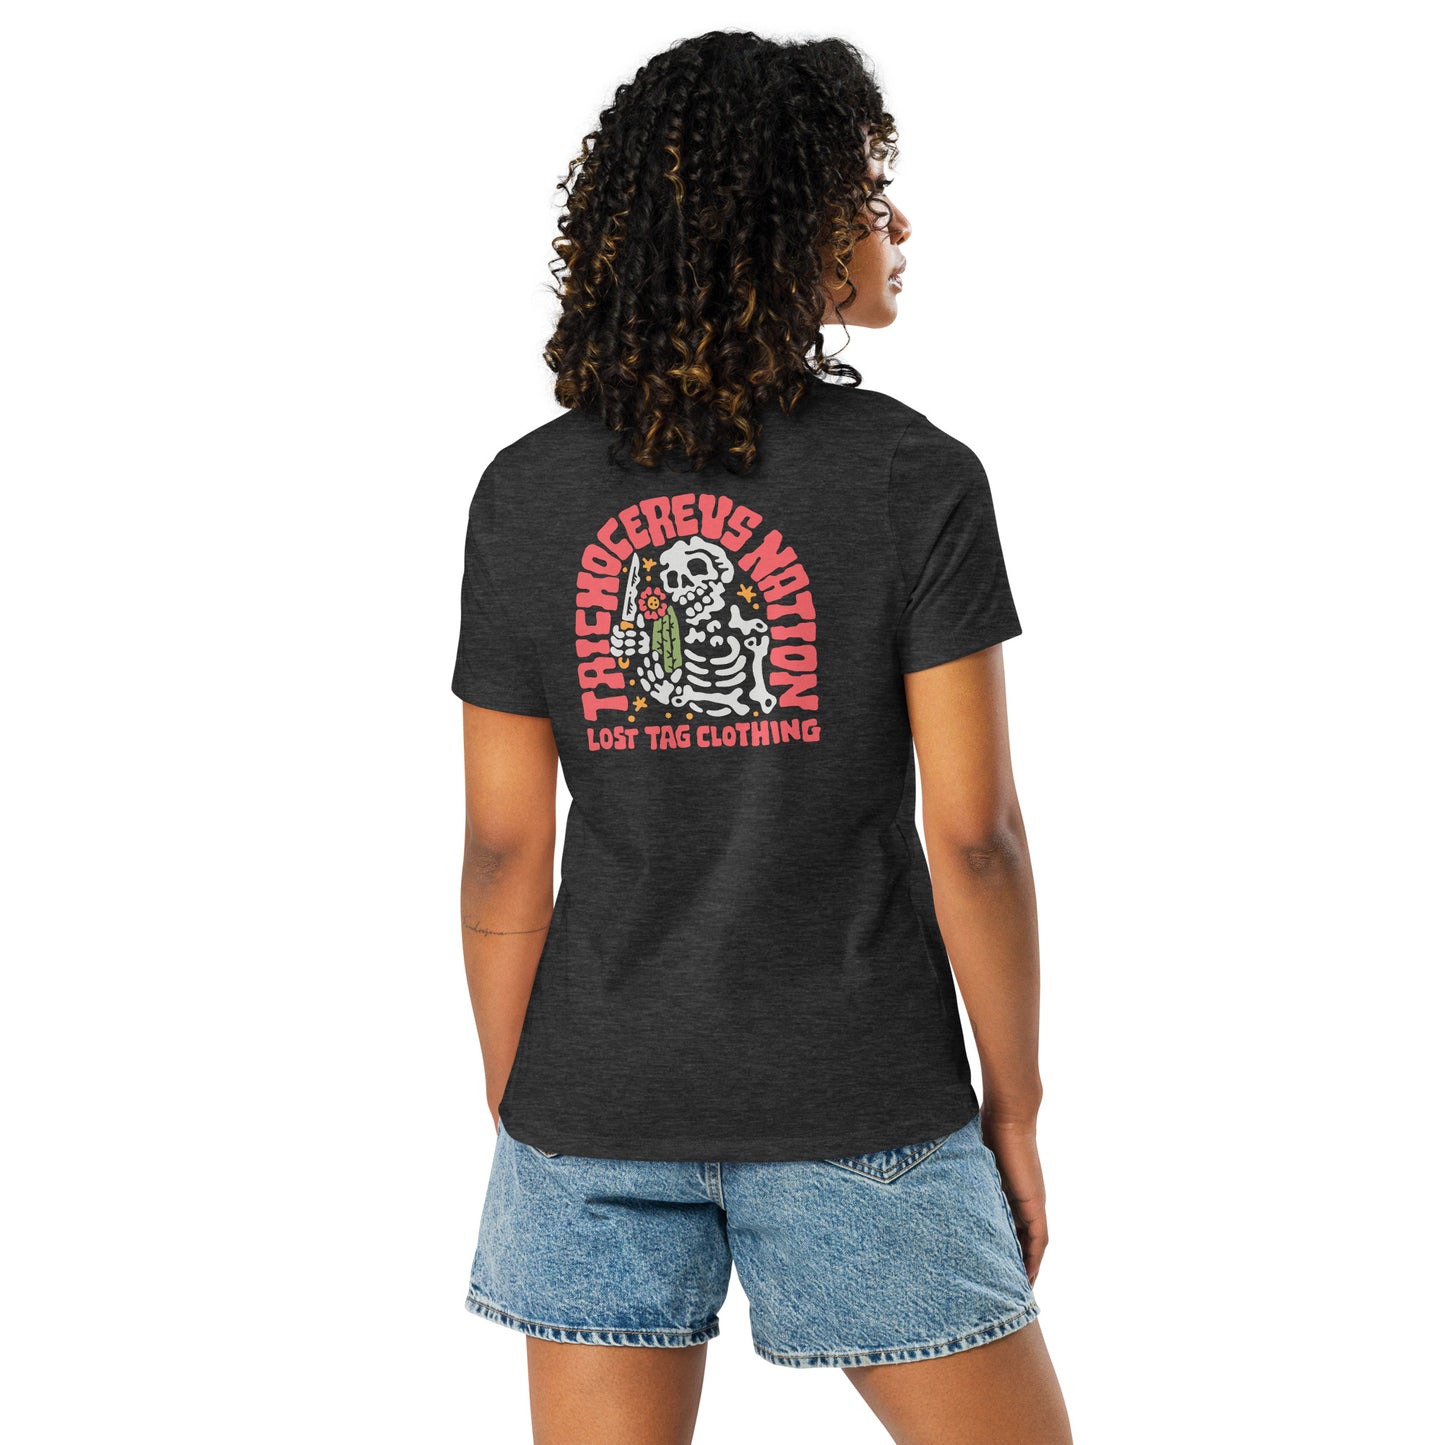 Zweiseitiges, entspanntes Damen-T-Shirt von Tricho Nation